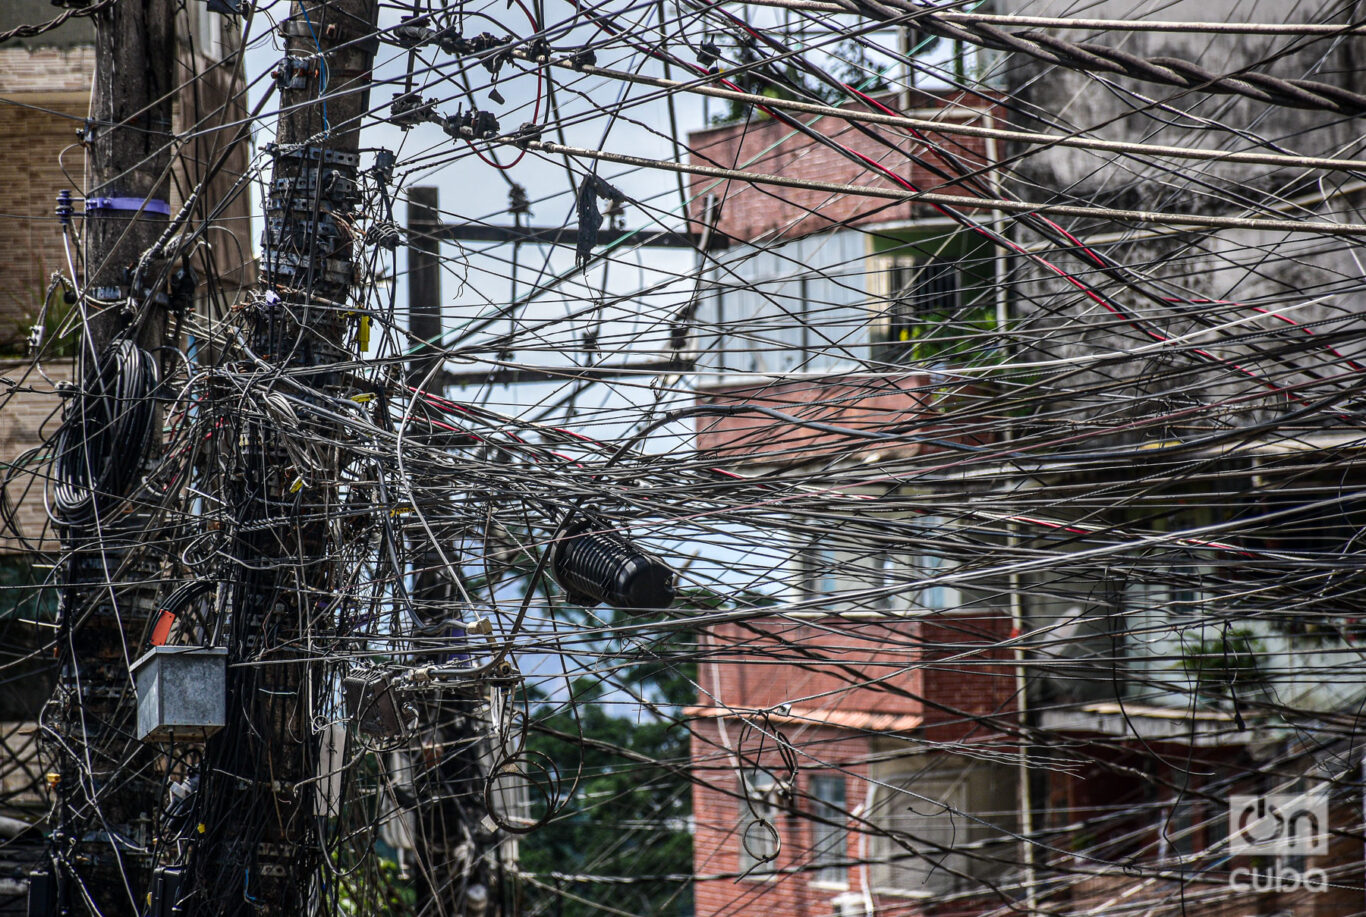 El enjambre de cables eléctricos es algo que distingue a las favelas. Foto: Kaloian.
